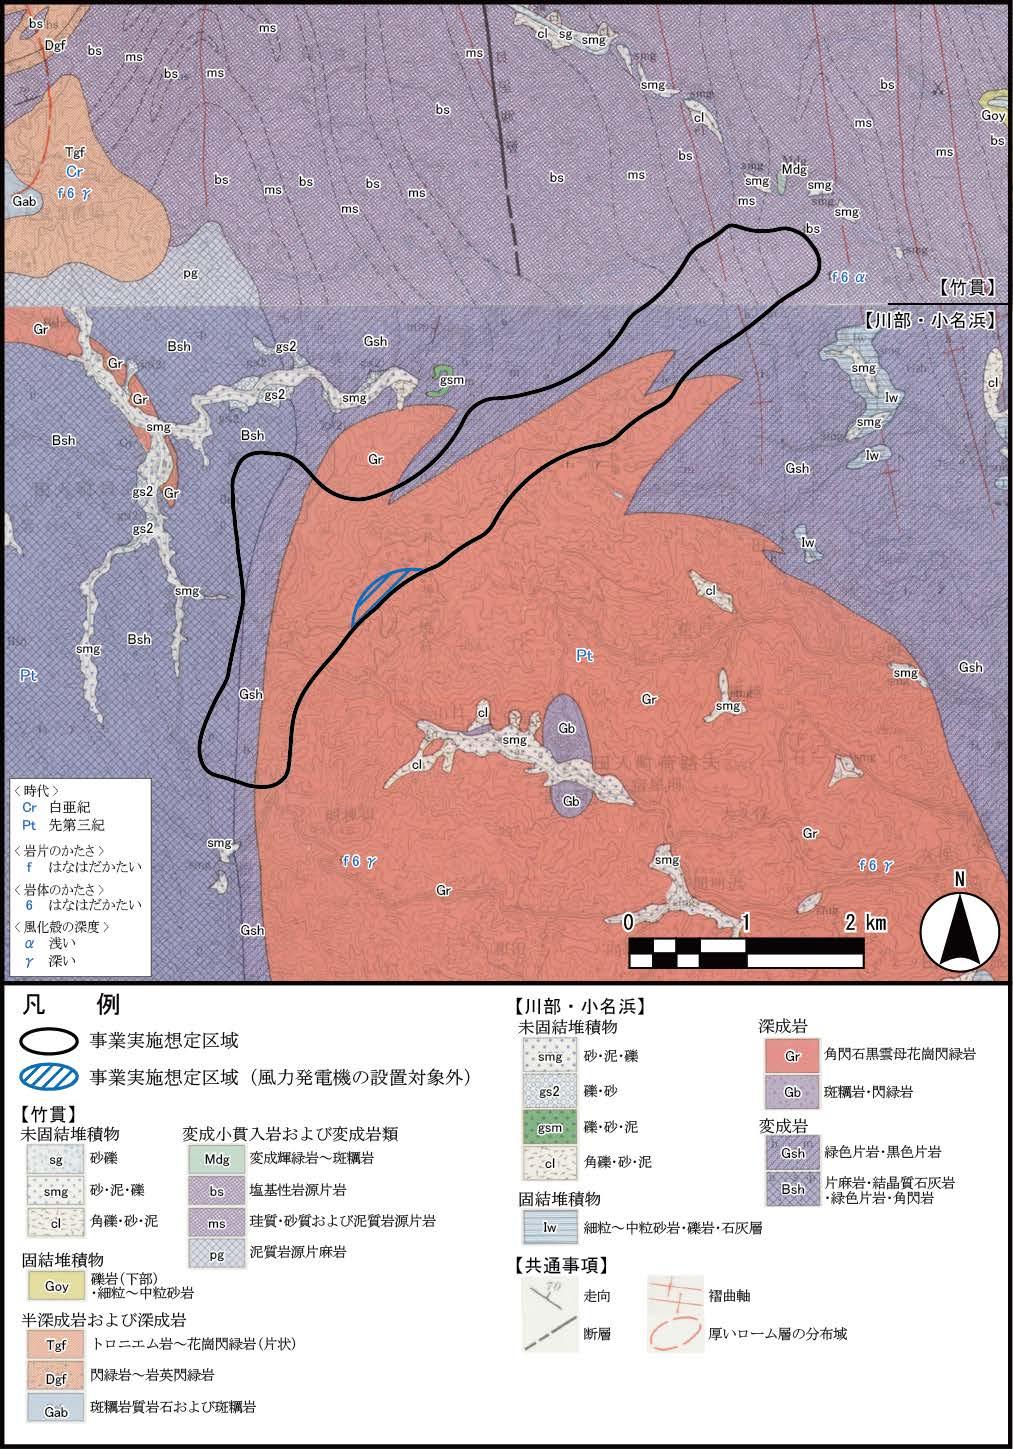 第 3.1-14 図表層地質図 土地分類基本調査表層地質図 [ 竹貫 ] ( 福島県 平成 10 年 )